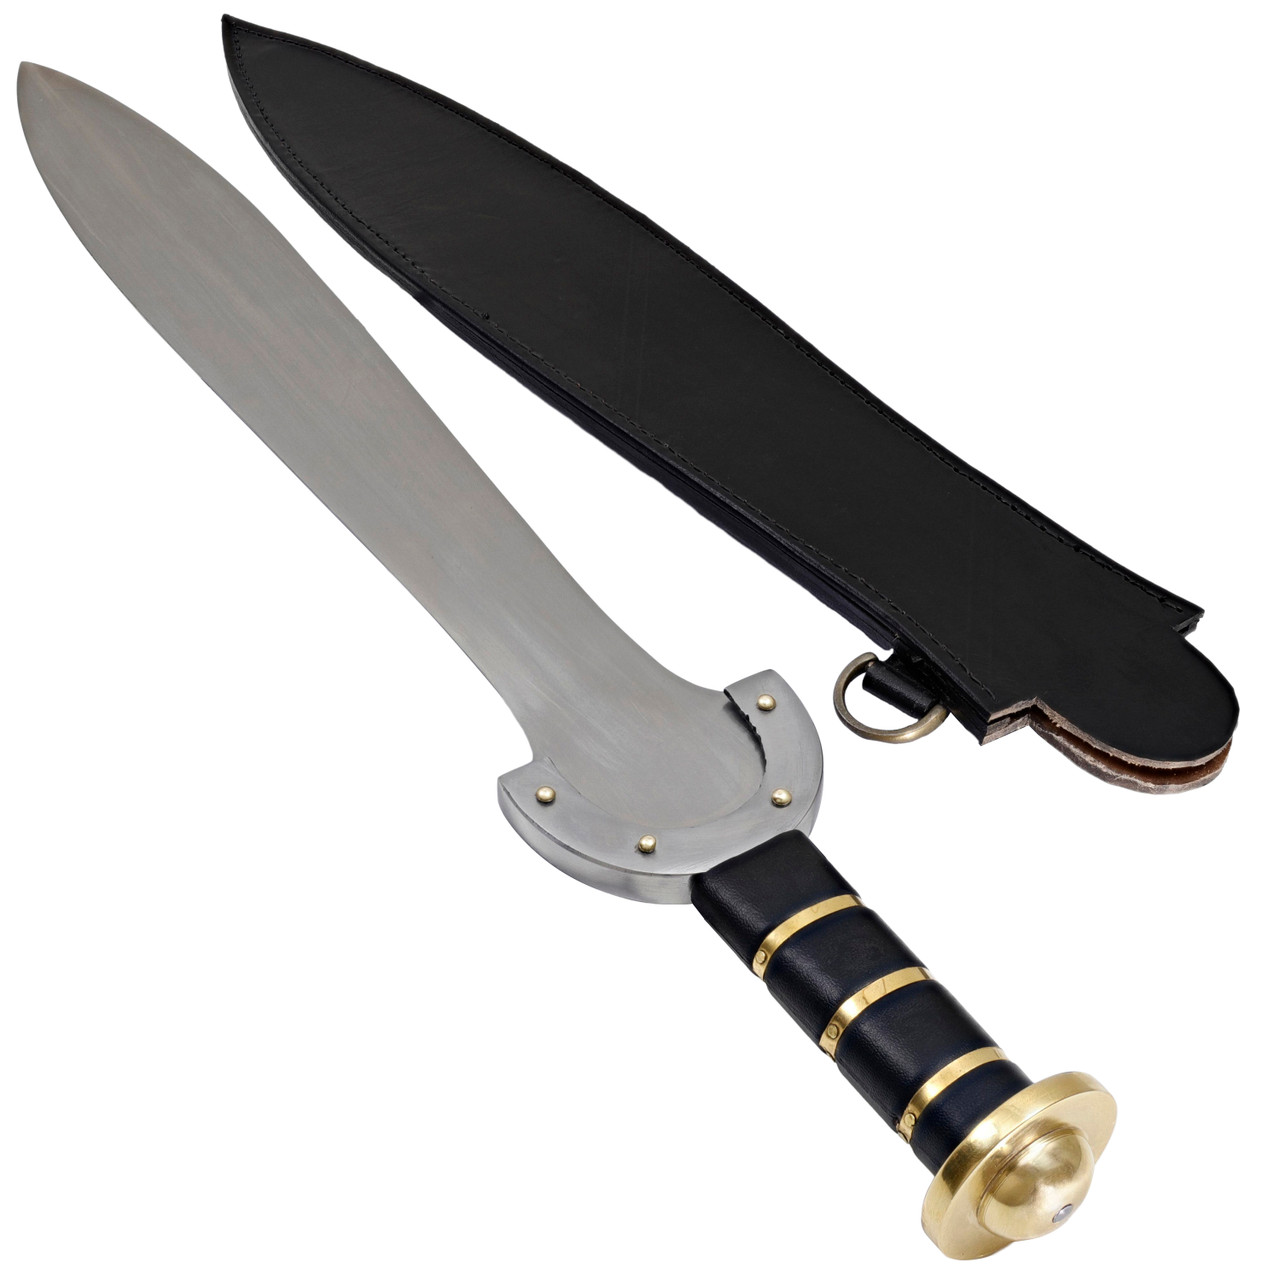 Fantasy Knife- High Carbon 1095 Steel Sword -17- Curved Knife